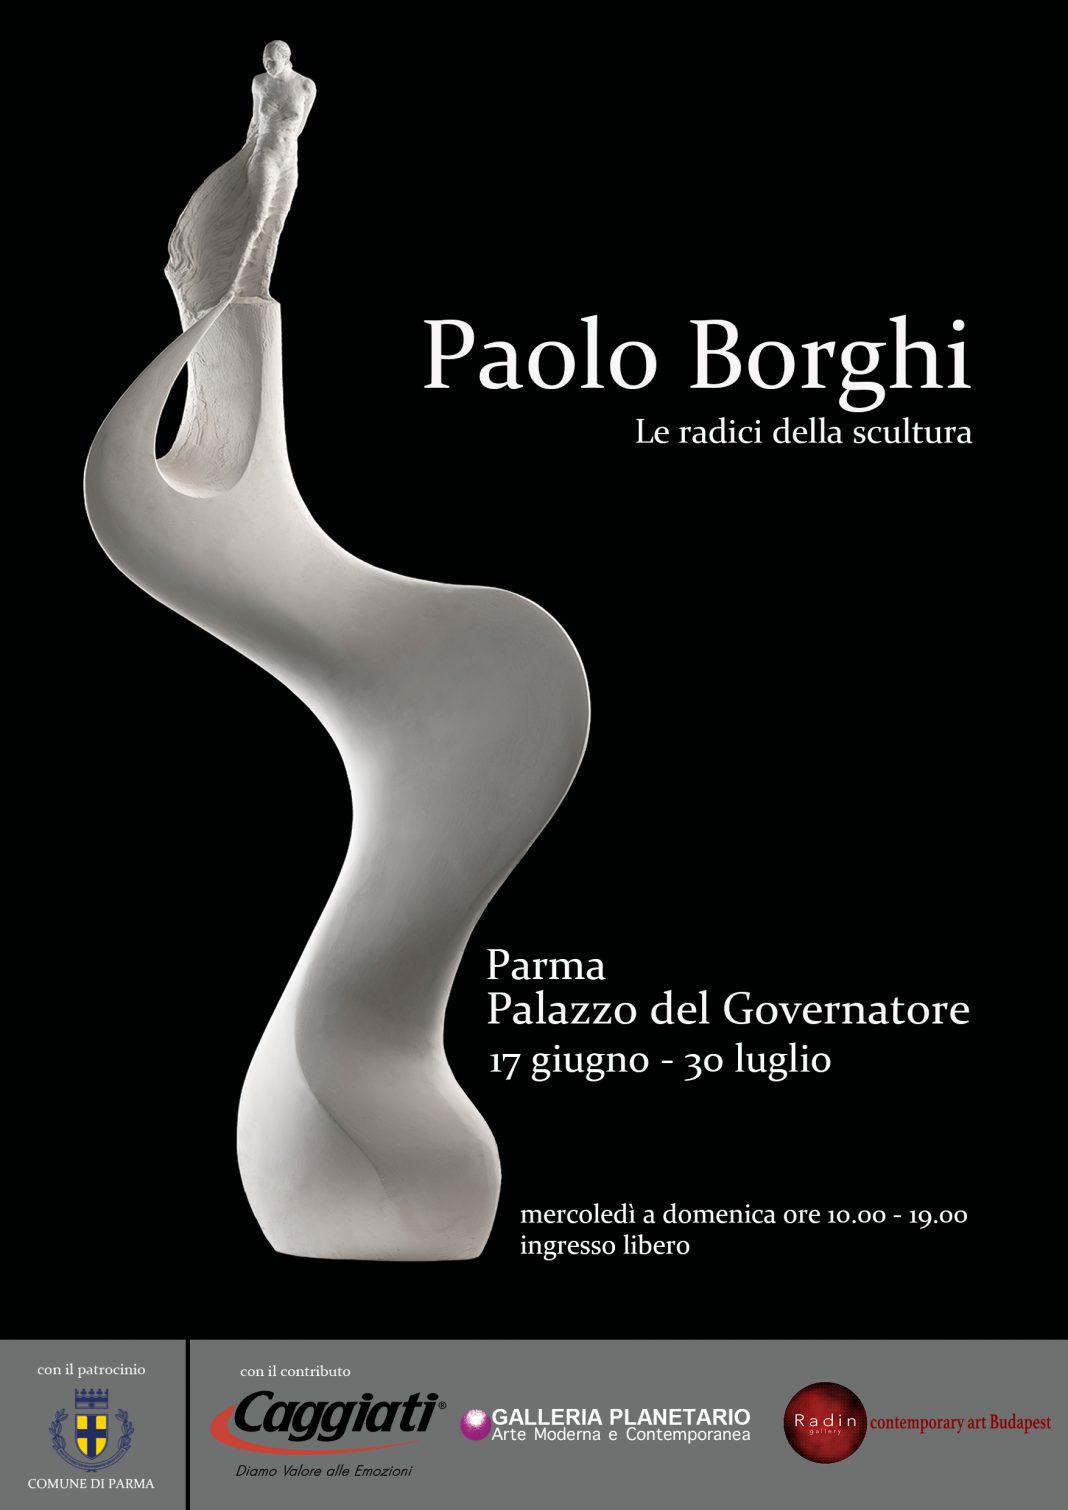 Paolo Borghi – Le radici della sculturahttps://www.exibart.com/repository/media/formidable/11/img/278/manifesto-1068x1510.jpg